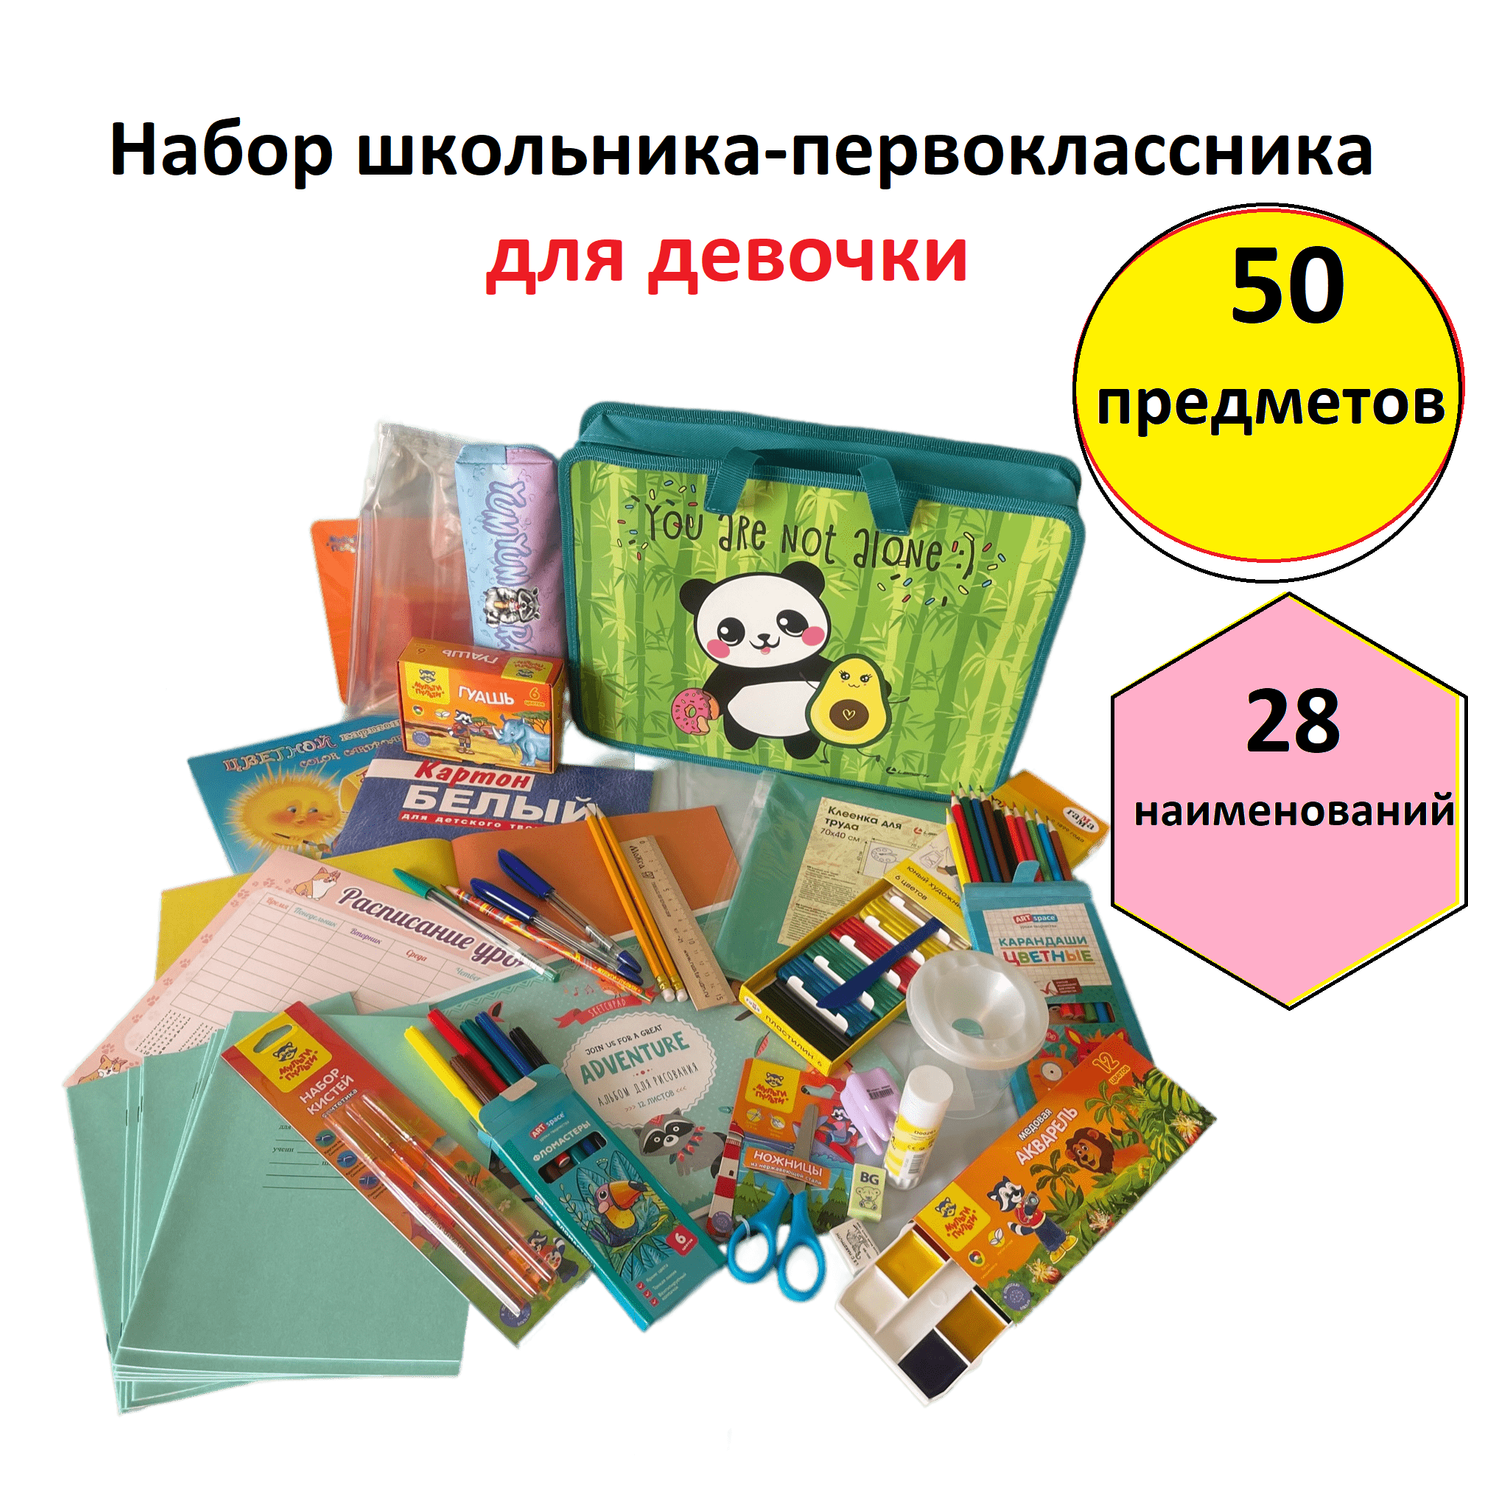 Канцелярский набор школьника Lamark для первоклассника Panda для девочки 50 предметов 28 наименований - фото 1